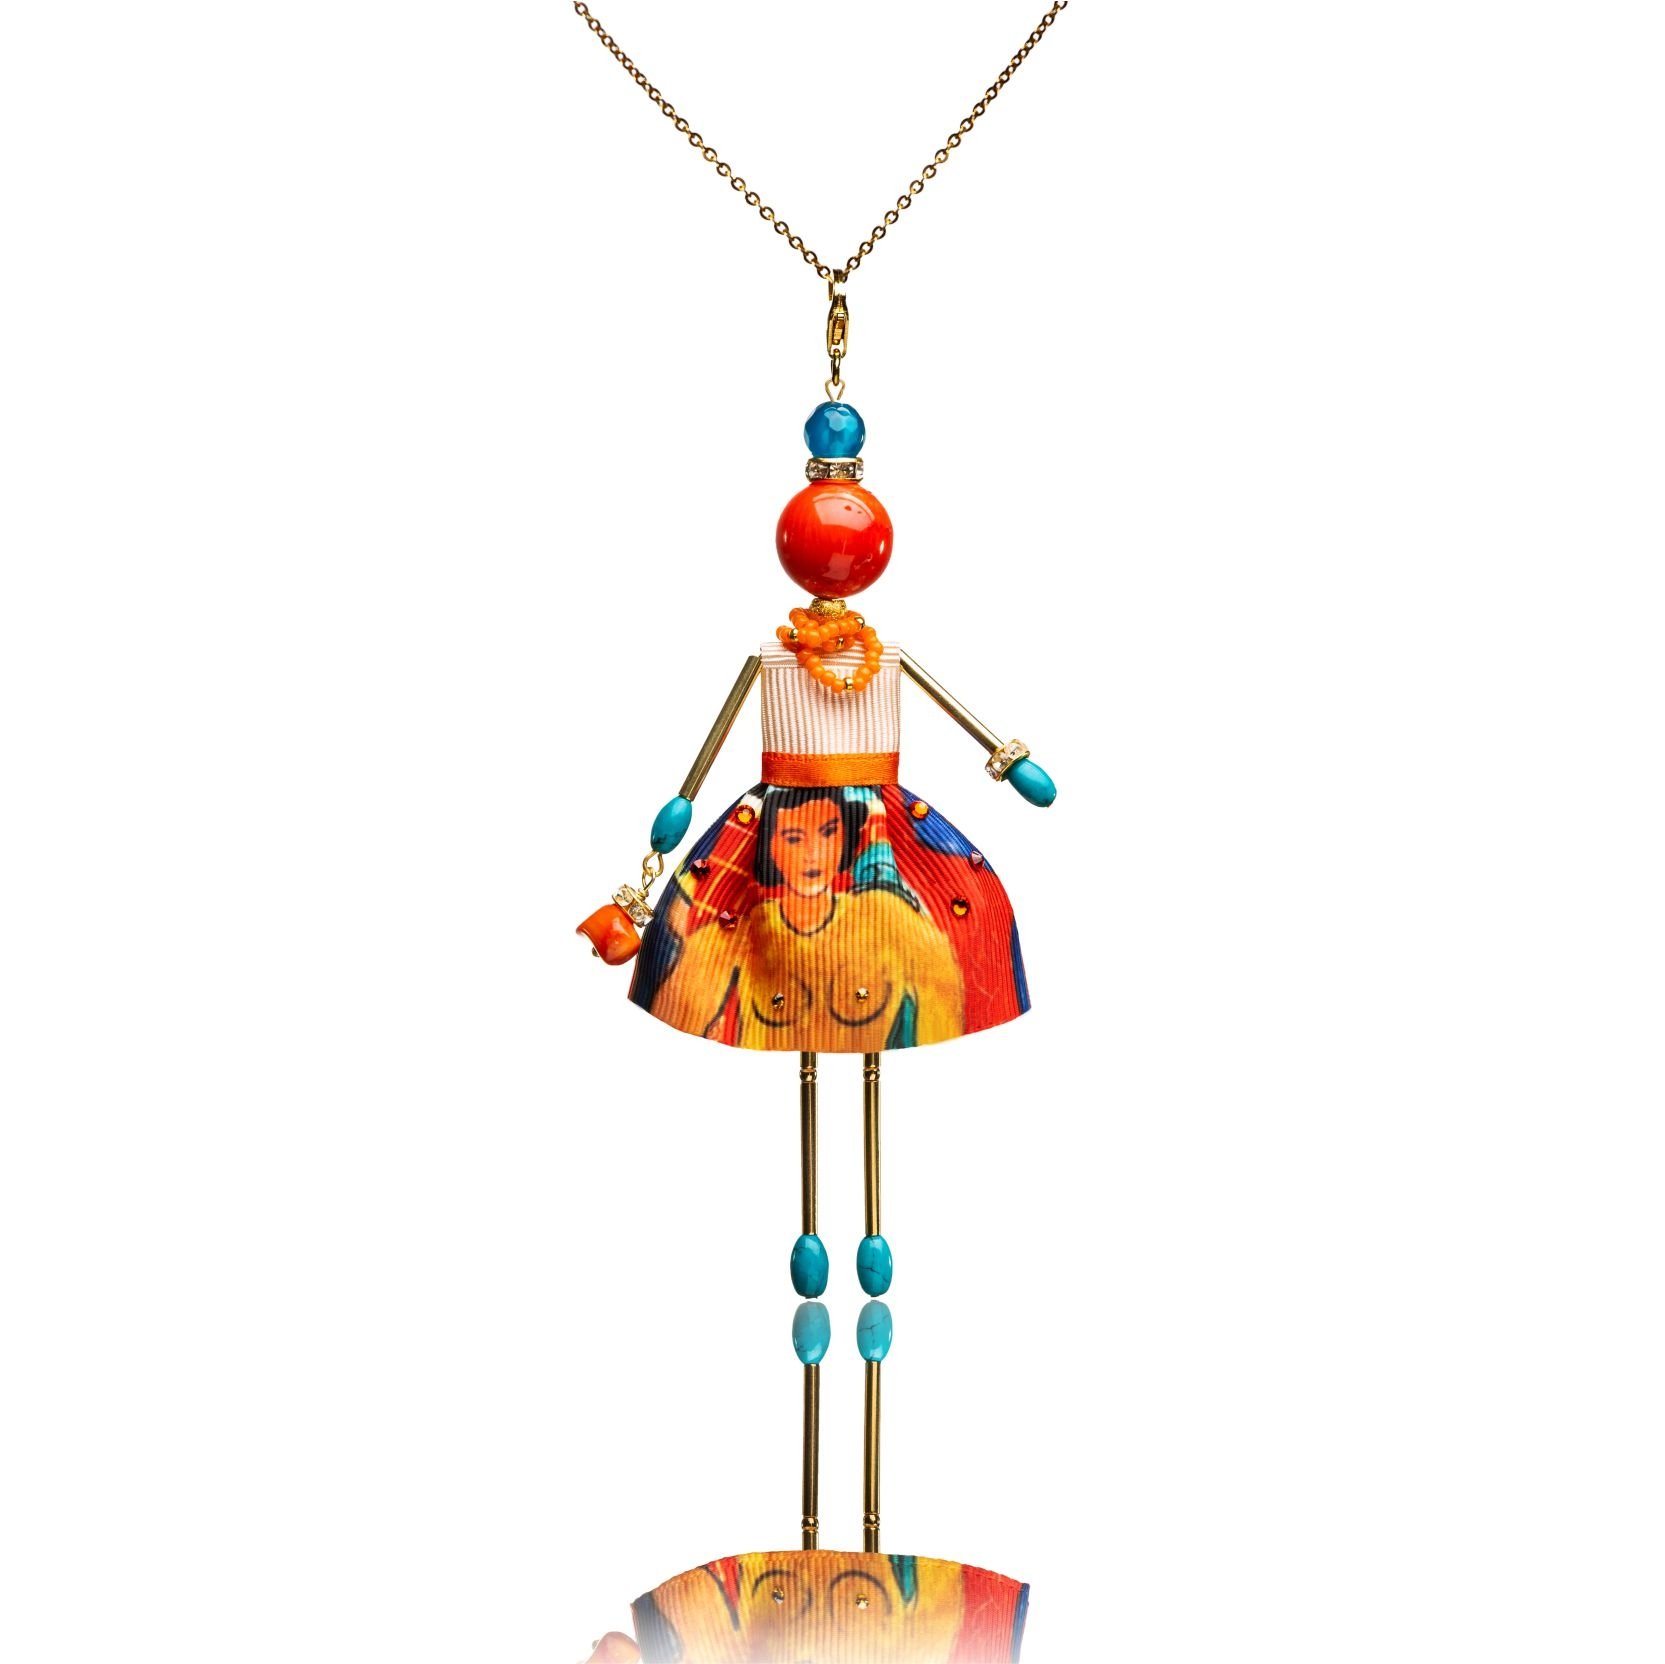 Muñeca-colgante con coral naranja basado en el cuadro de Henri Matisse "Música"